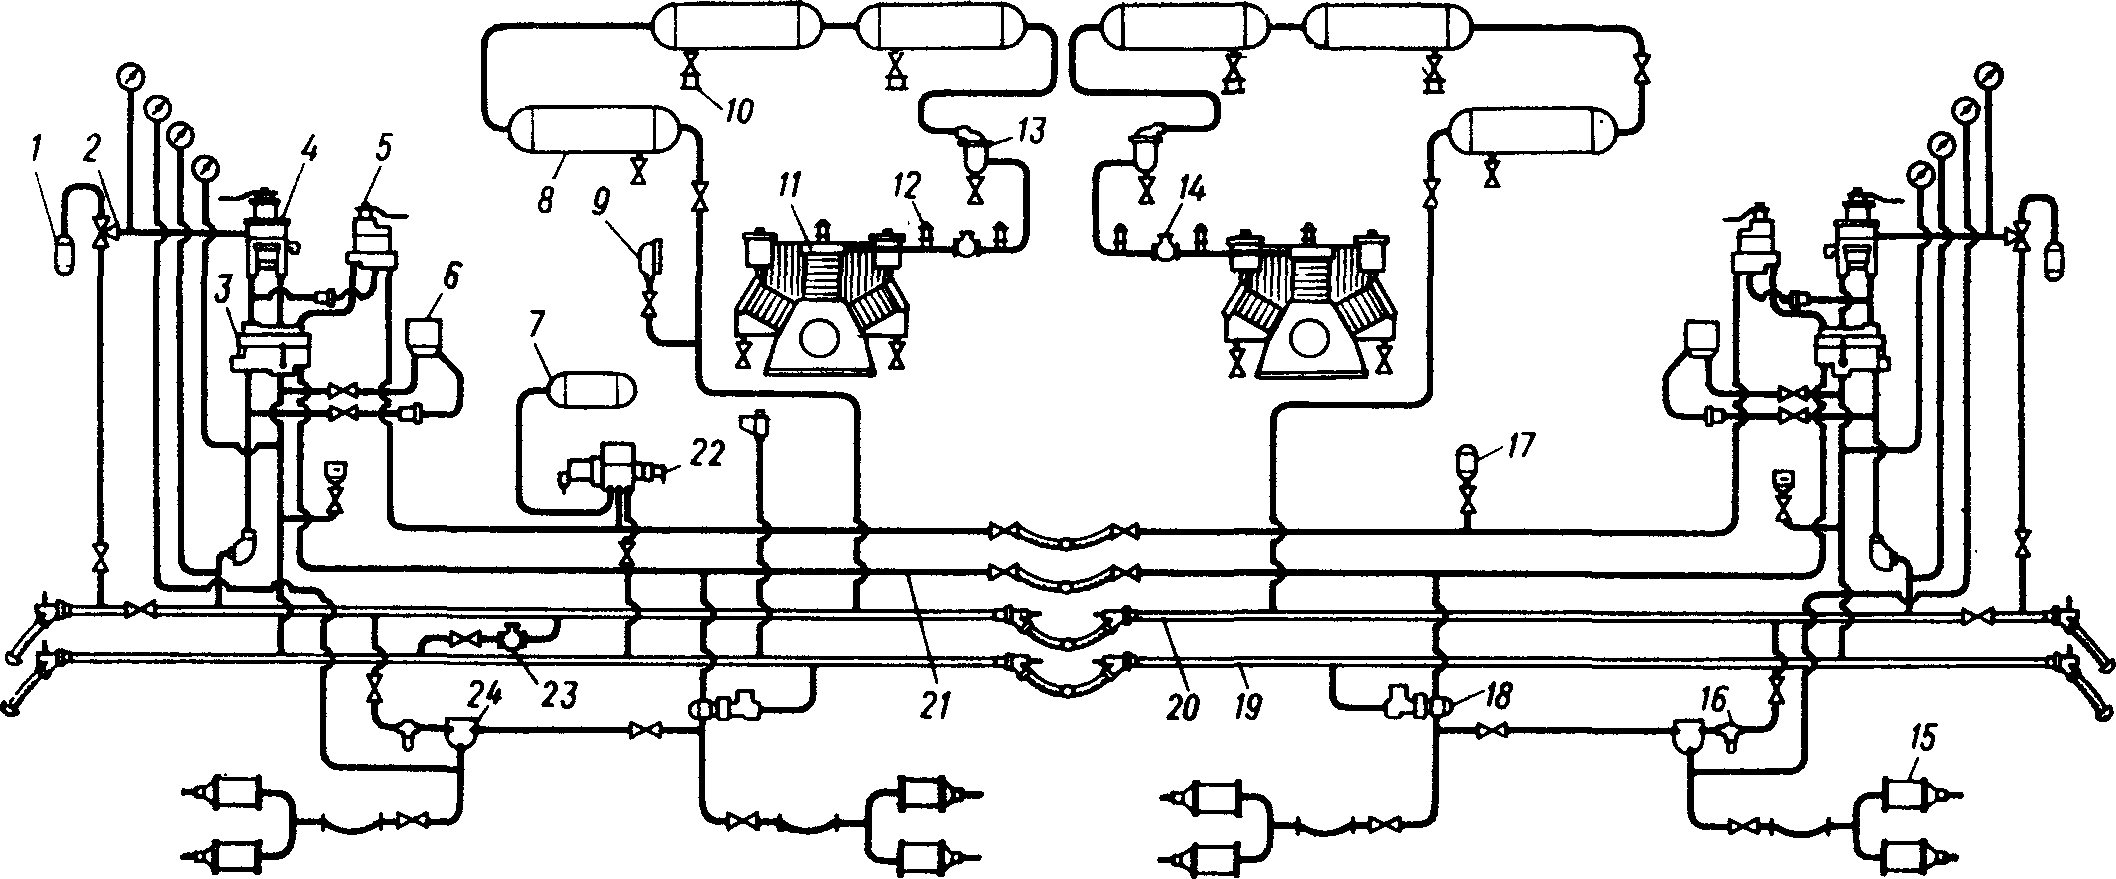 Схема тормозного оборудования электровоза ВЛ10